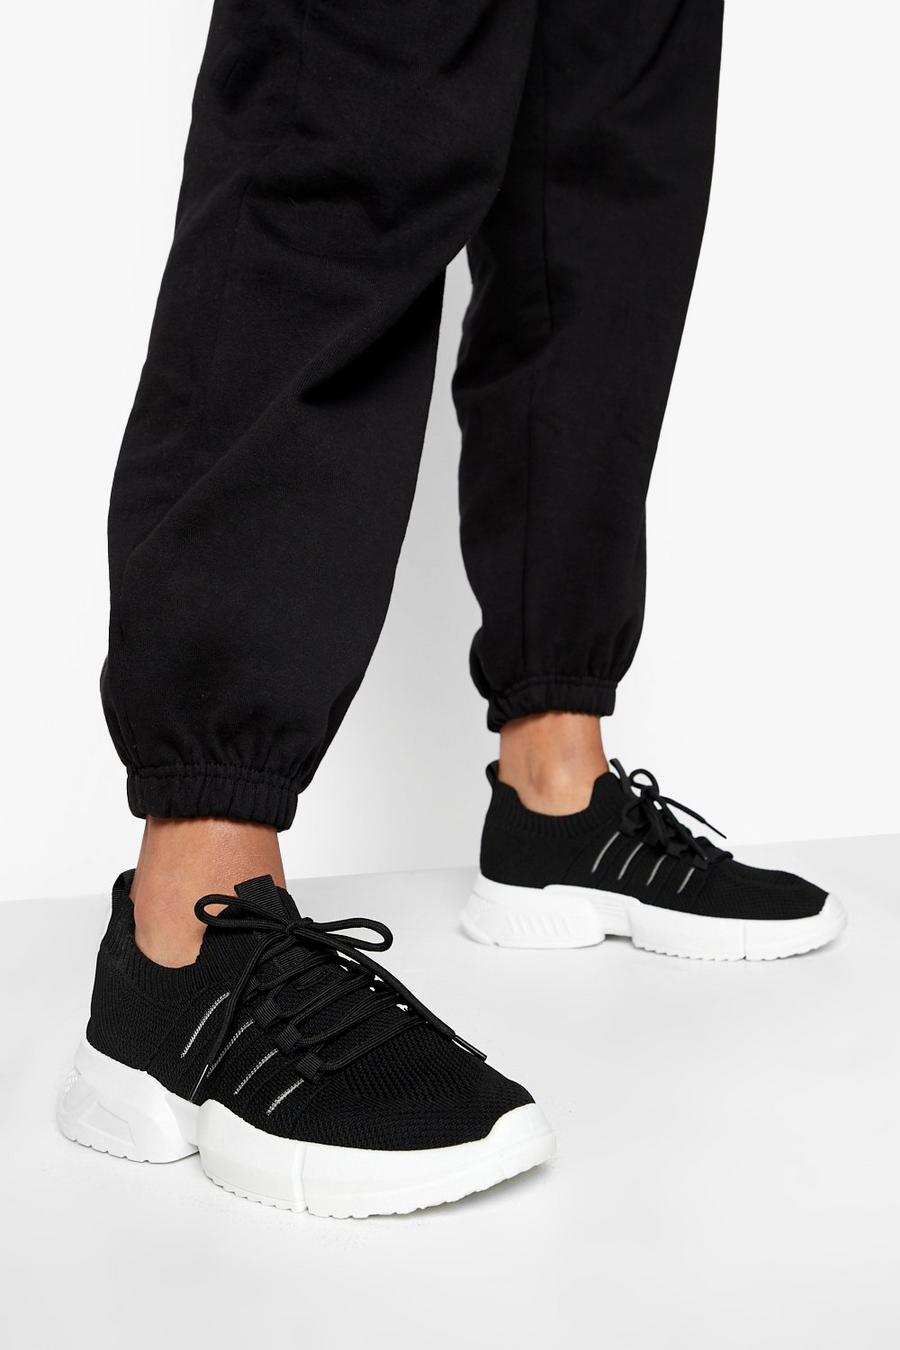 Zapatillas deportivas de tela con cordones cruzados, Black negro